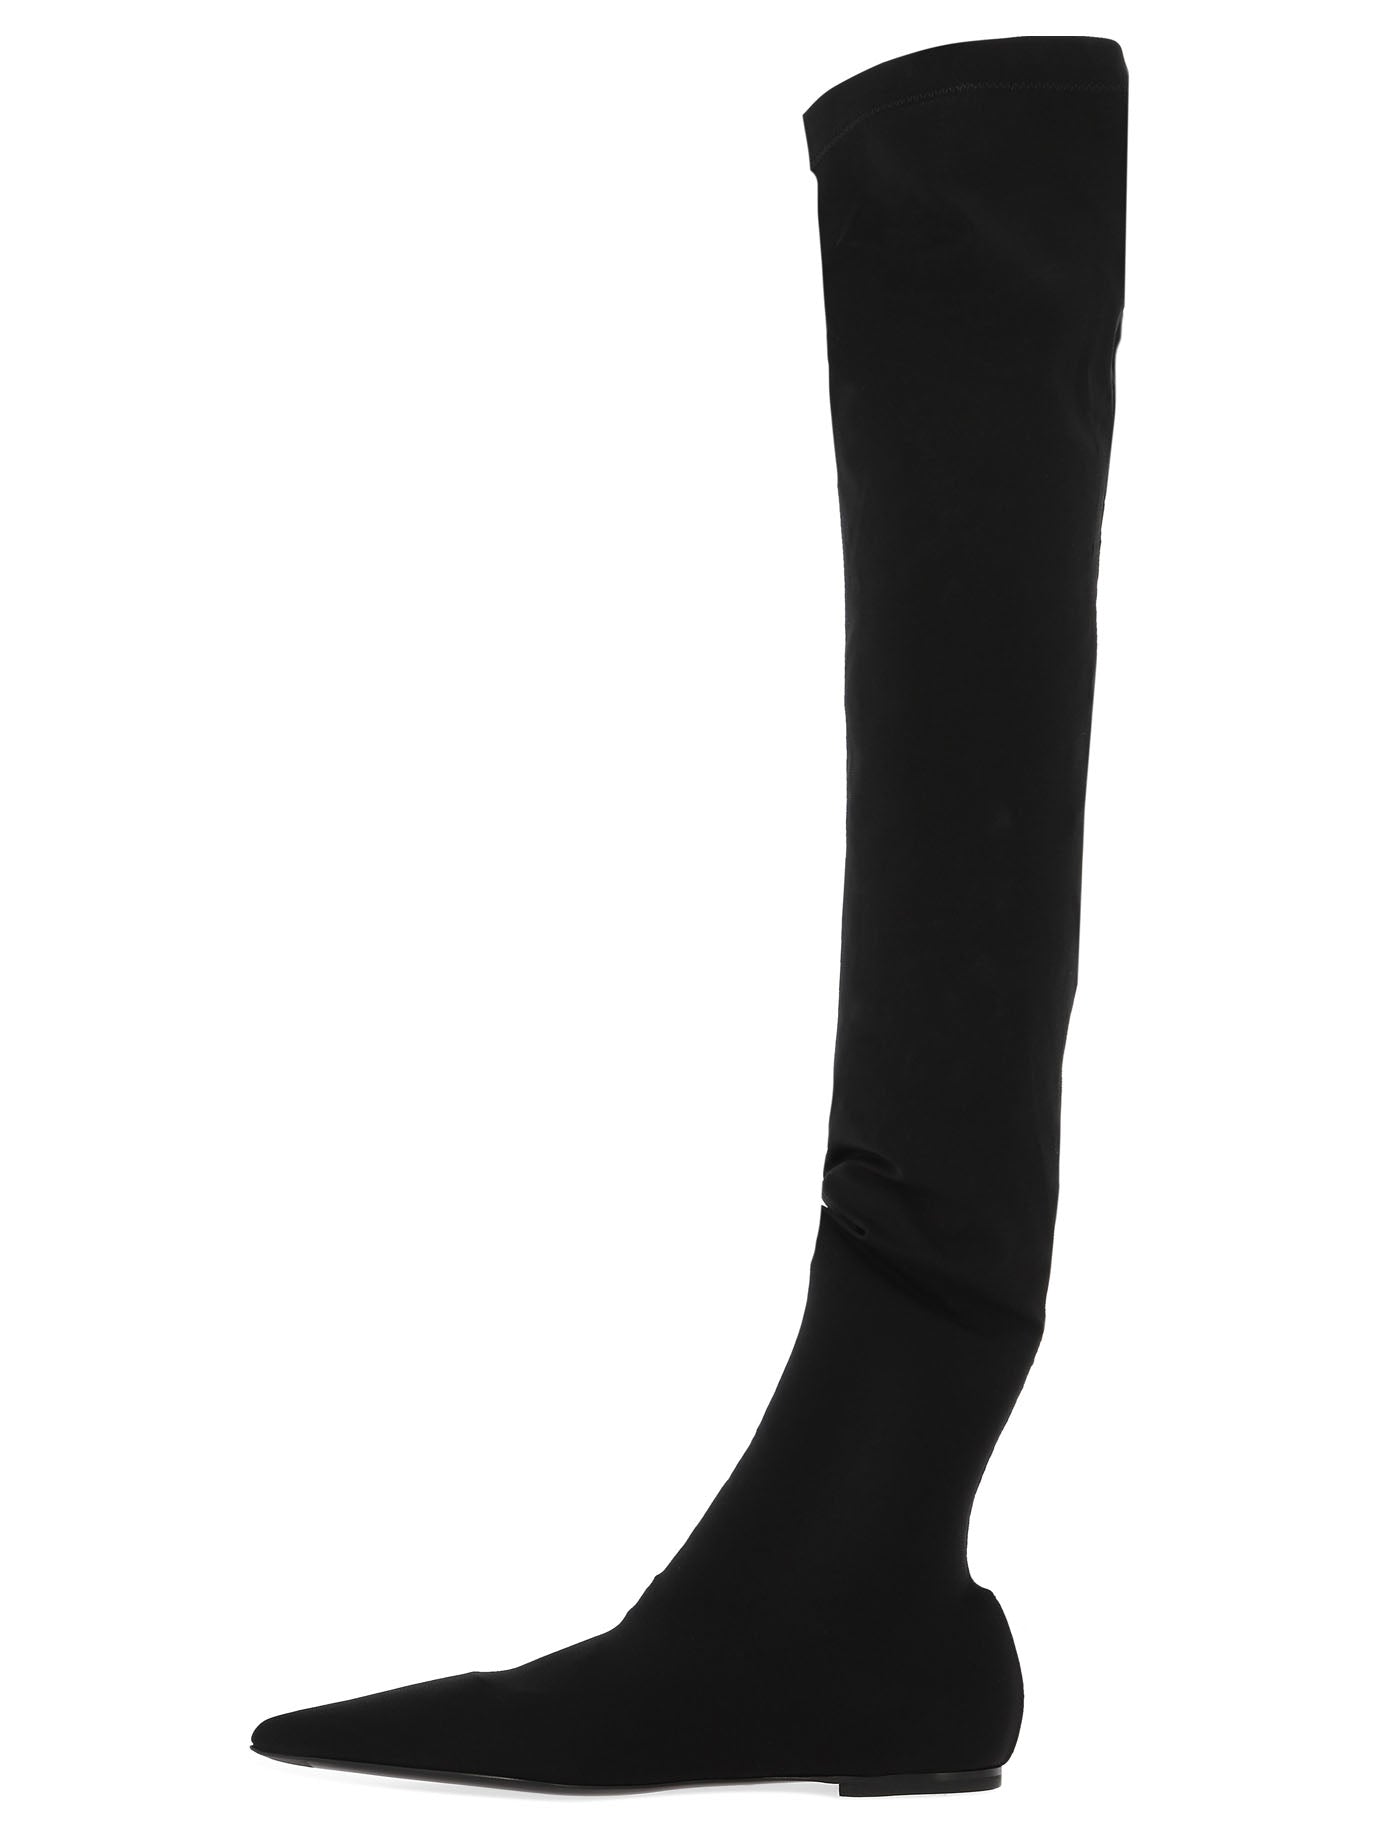 Dolce & Gabbana Stretch Jersey Thigh High Boots